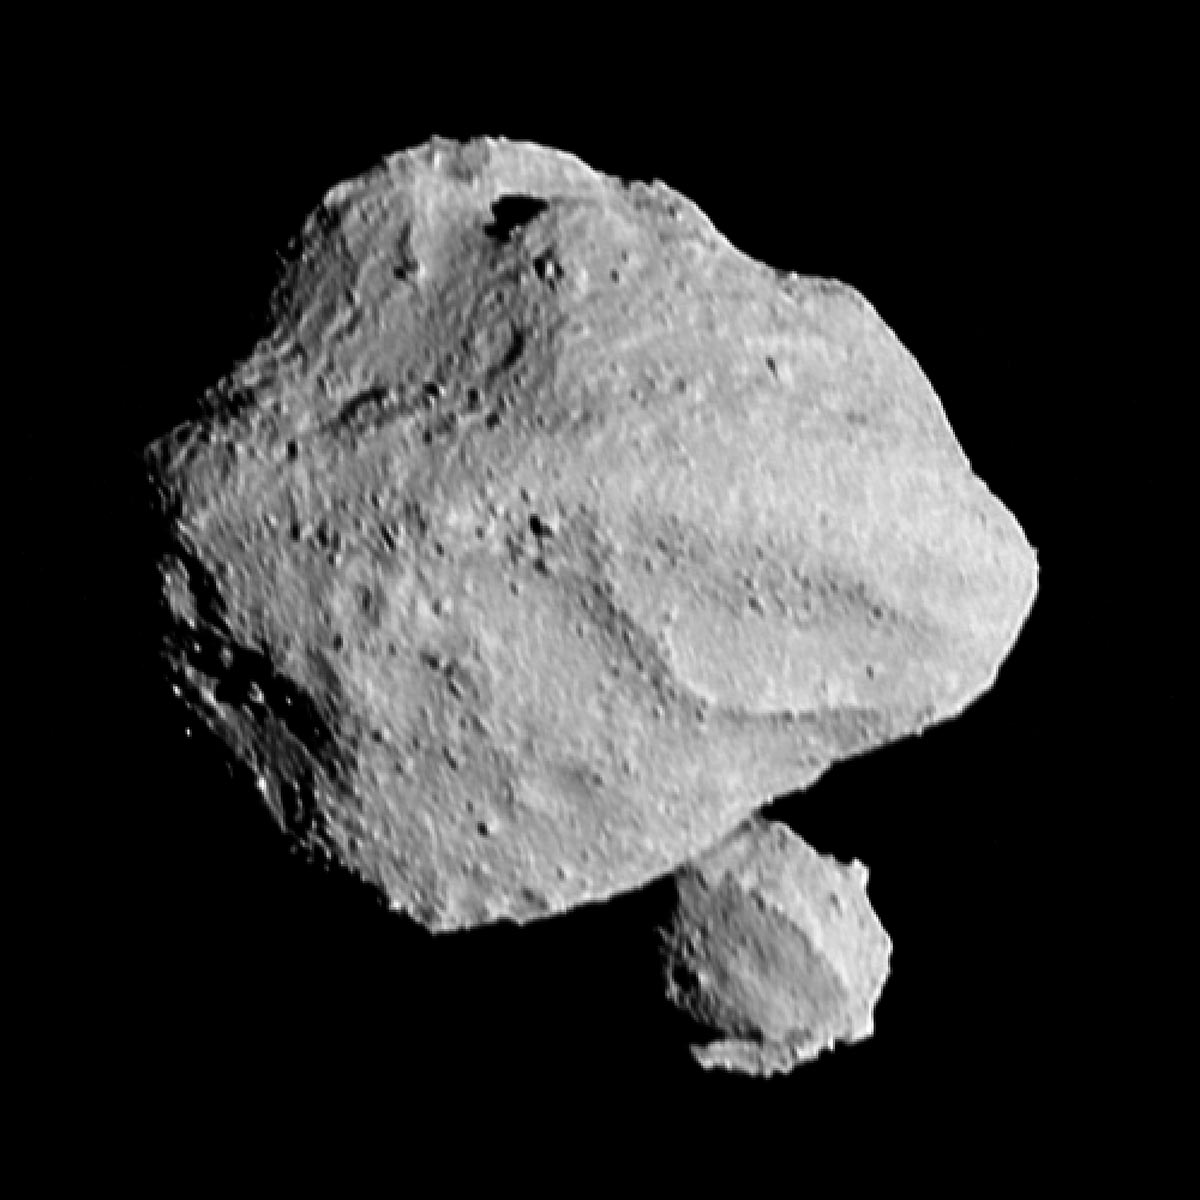 NASA’nın Lucy uzay aracı, Dinkenish asteroitinin yanından geçerken “dikkate değer” bir keşif yaptı